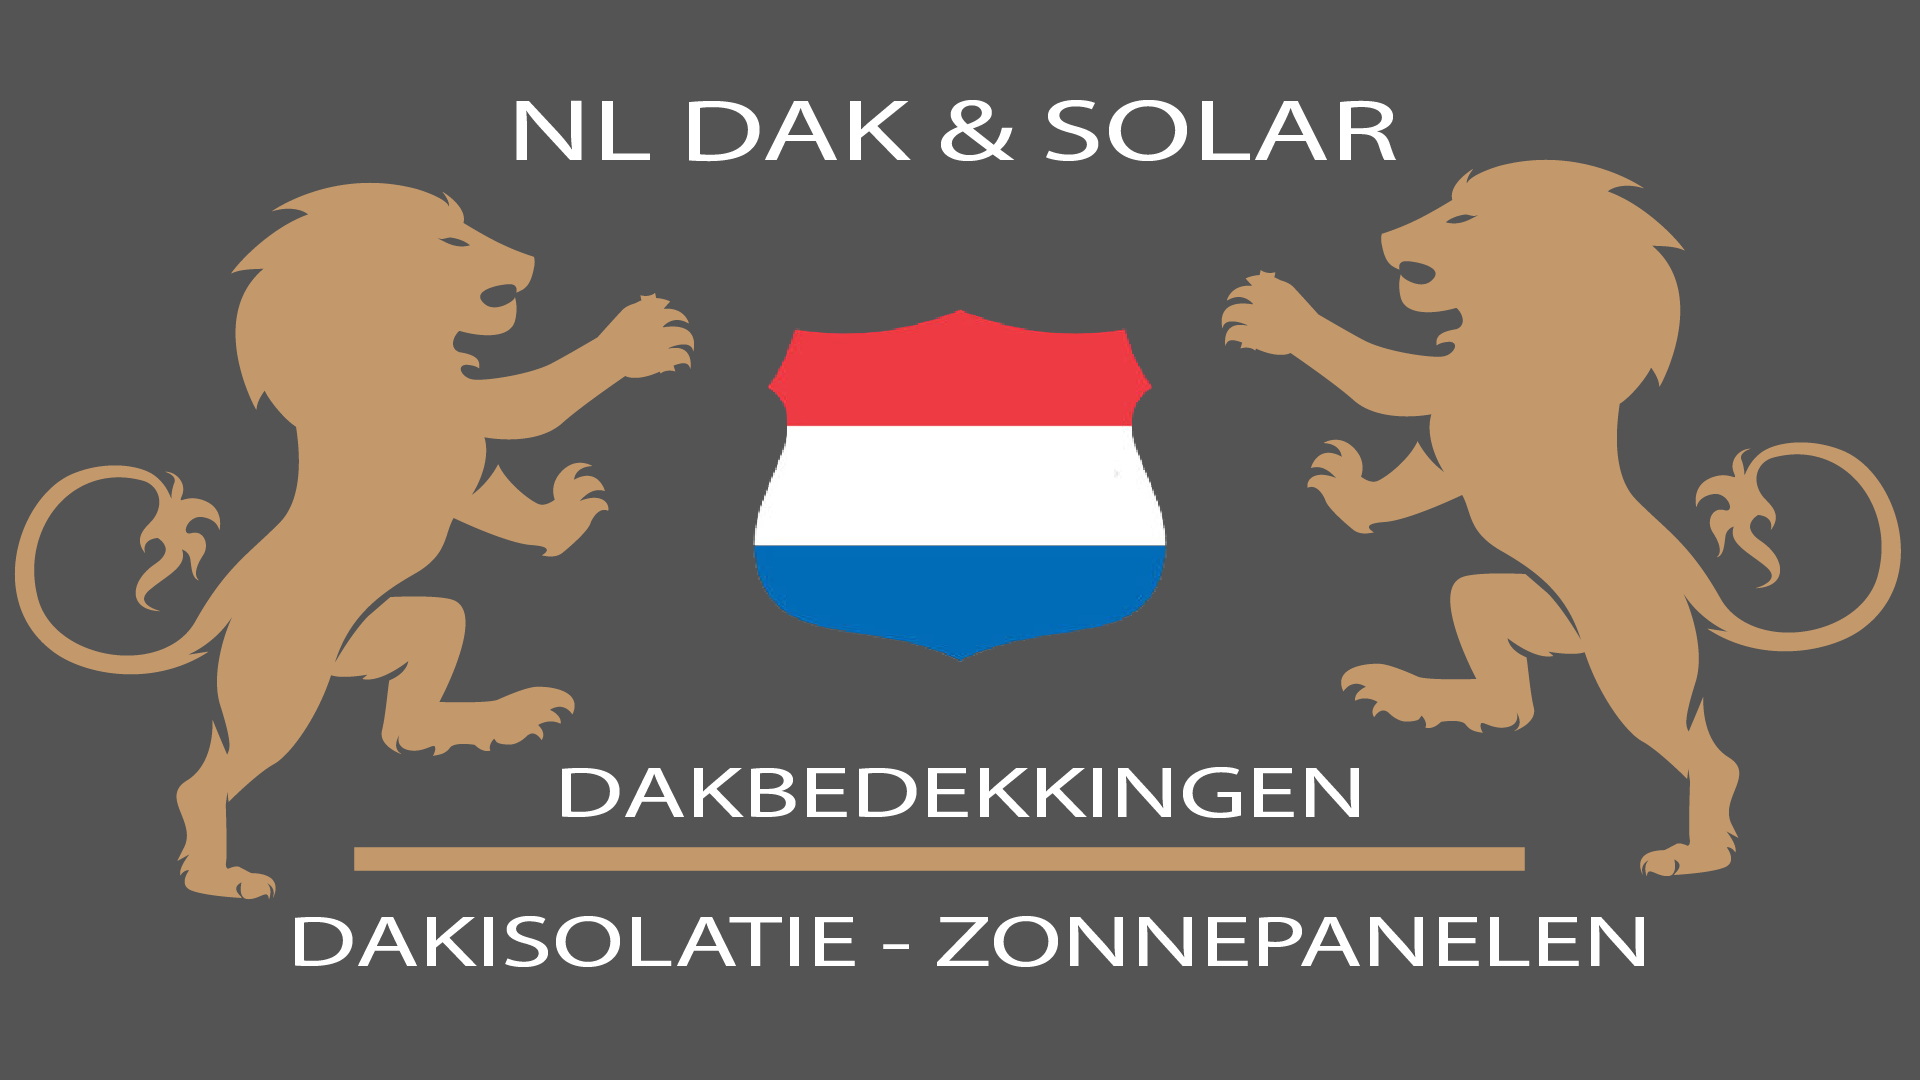 NL DAK & SOLAR